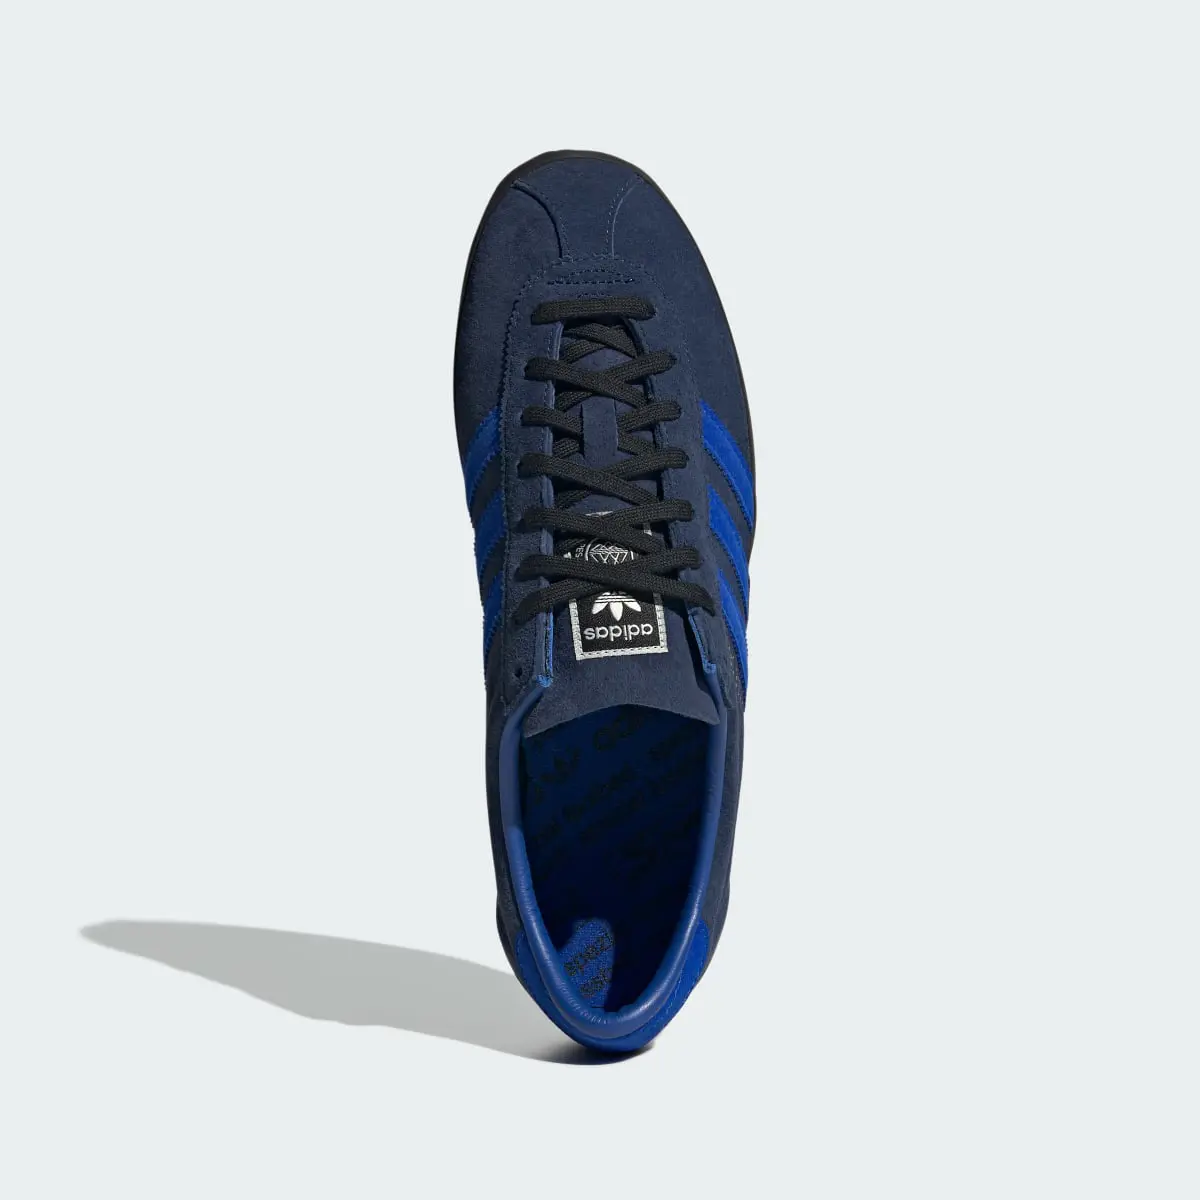 Adidas Gazelle SPZL Shoes. 3